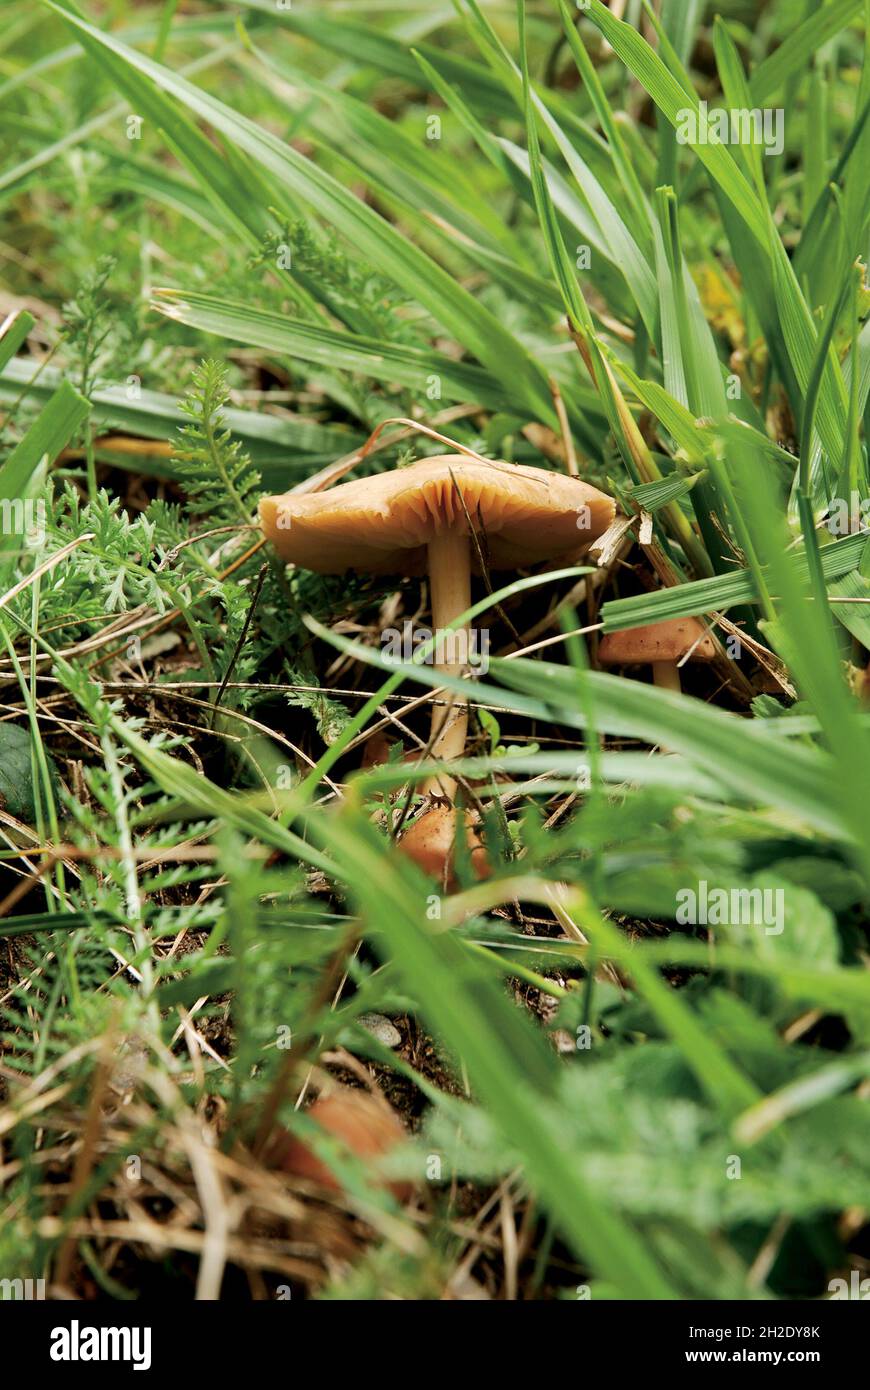 Closeup of Marasmius oreades mushrooms in the forest Stock Photo